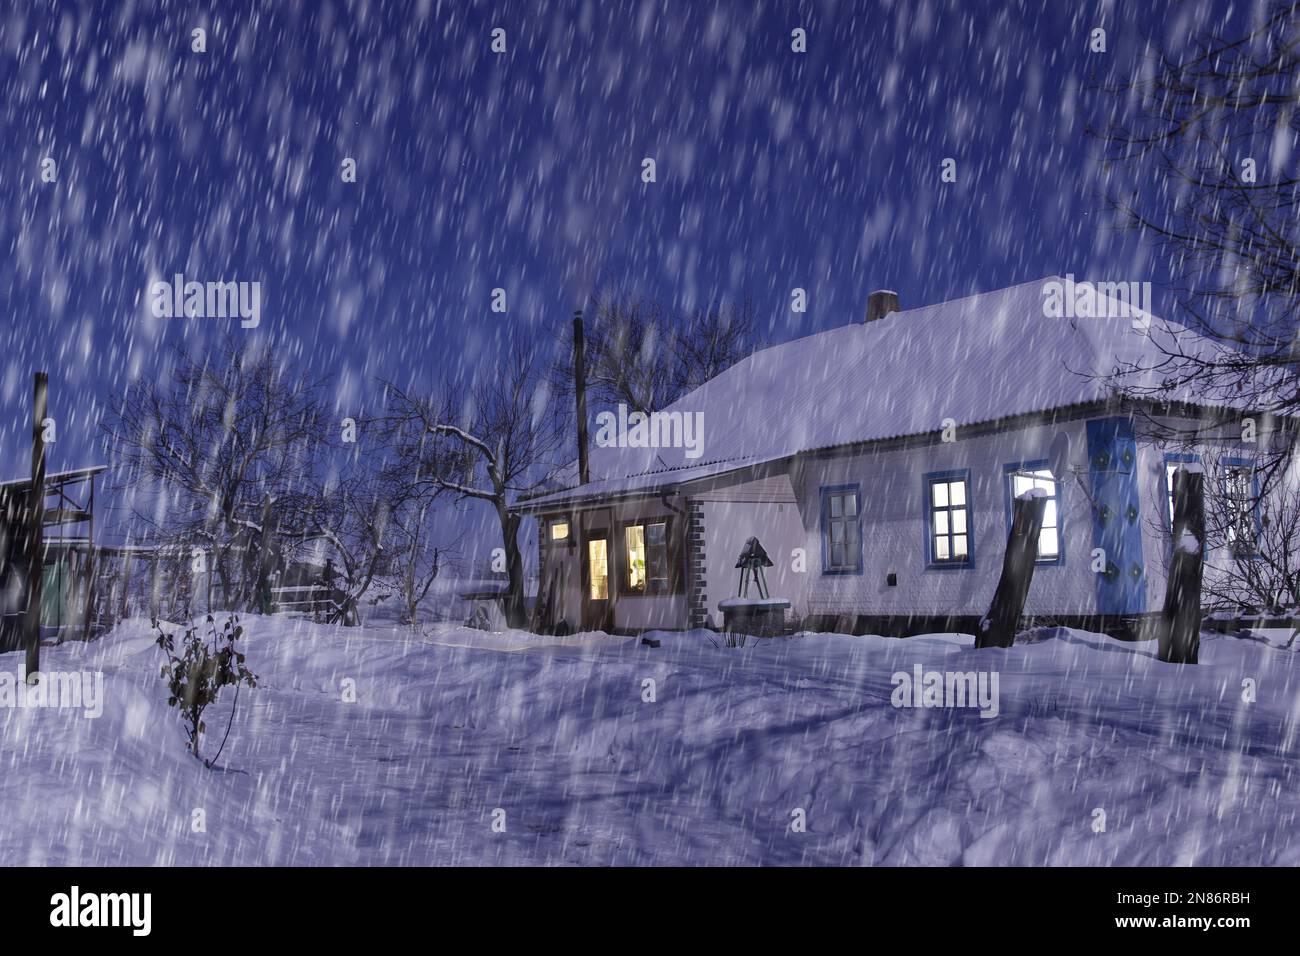 Wunderschöner Blick auf das schneebedeckte Haus bei Nacht bei starkem Schneefall. Alles ist mit Schnee bedeckt. Rauch kommt aus dem Kamin. Stockfoto